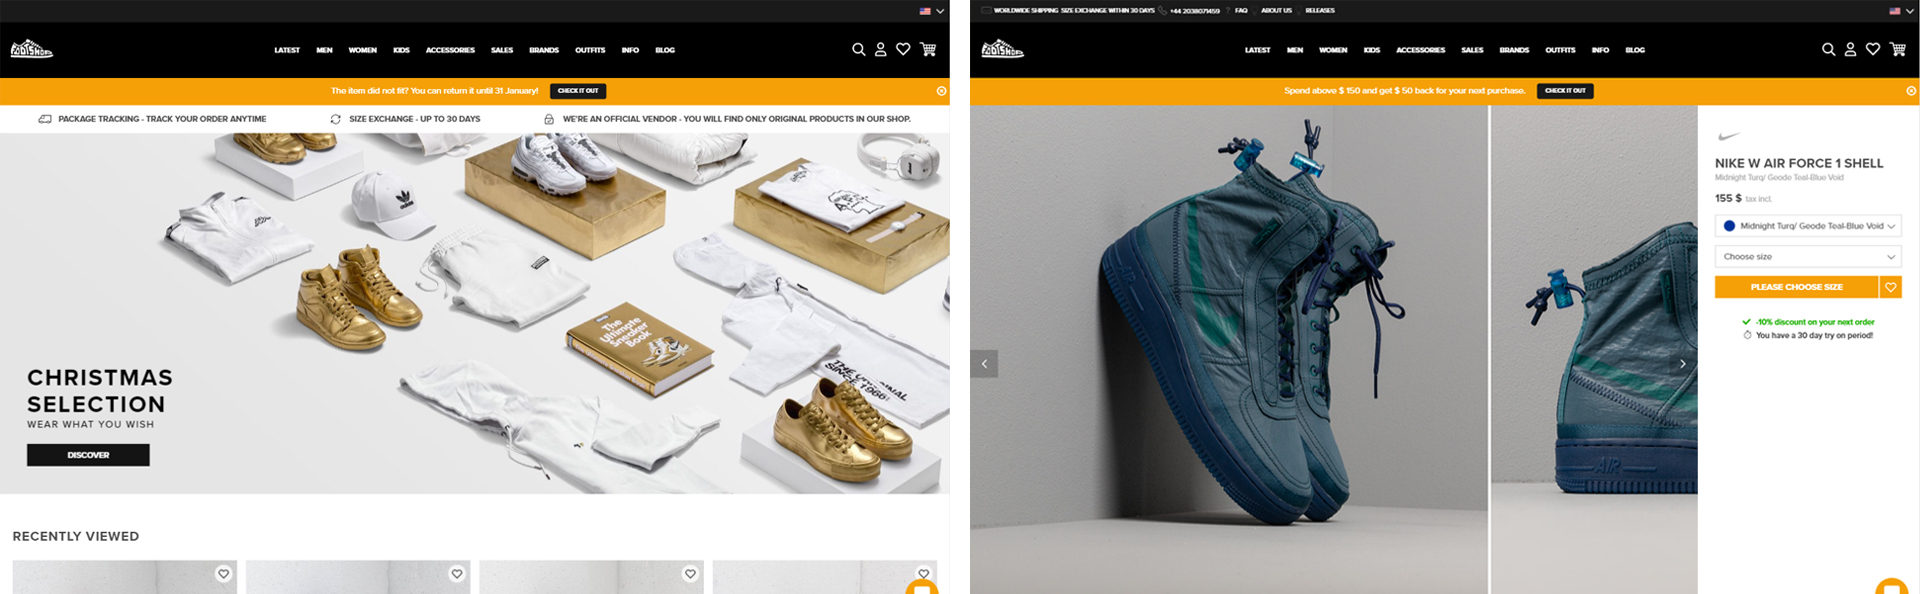 footshop website design screenshot